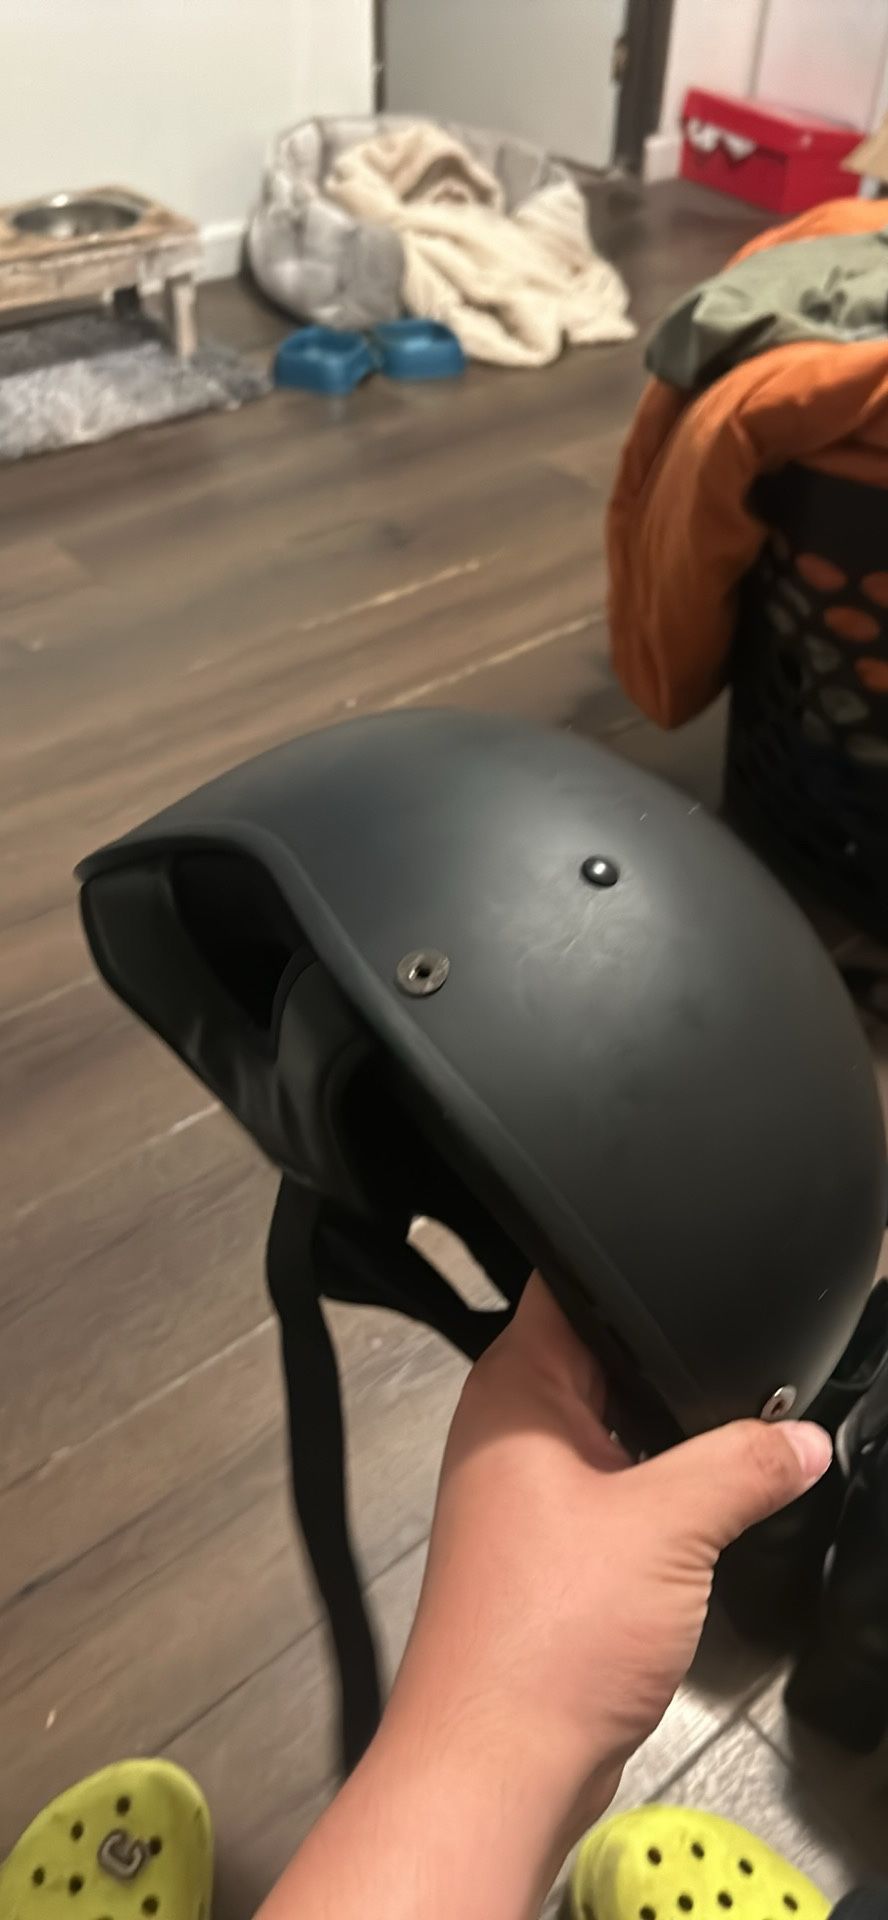 Medium Helmet